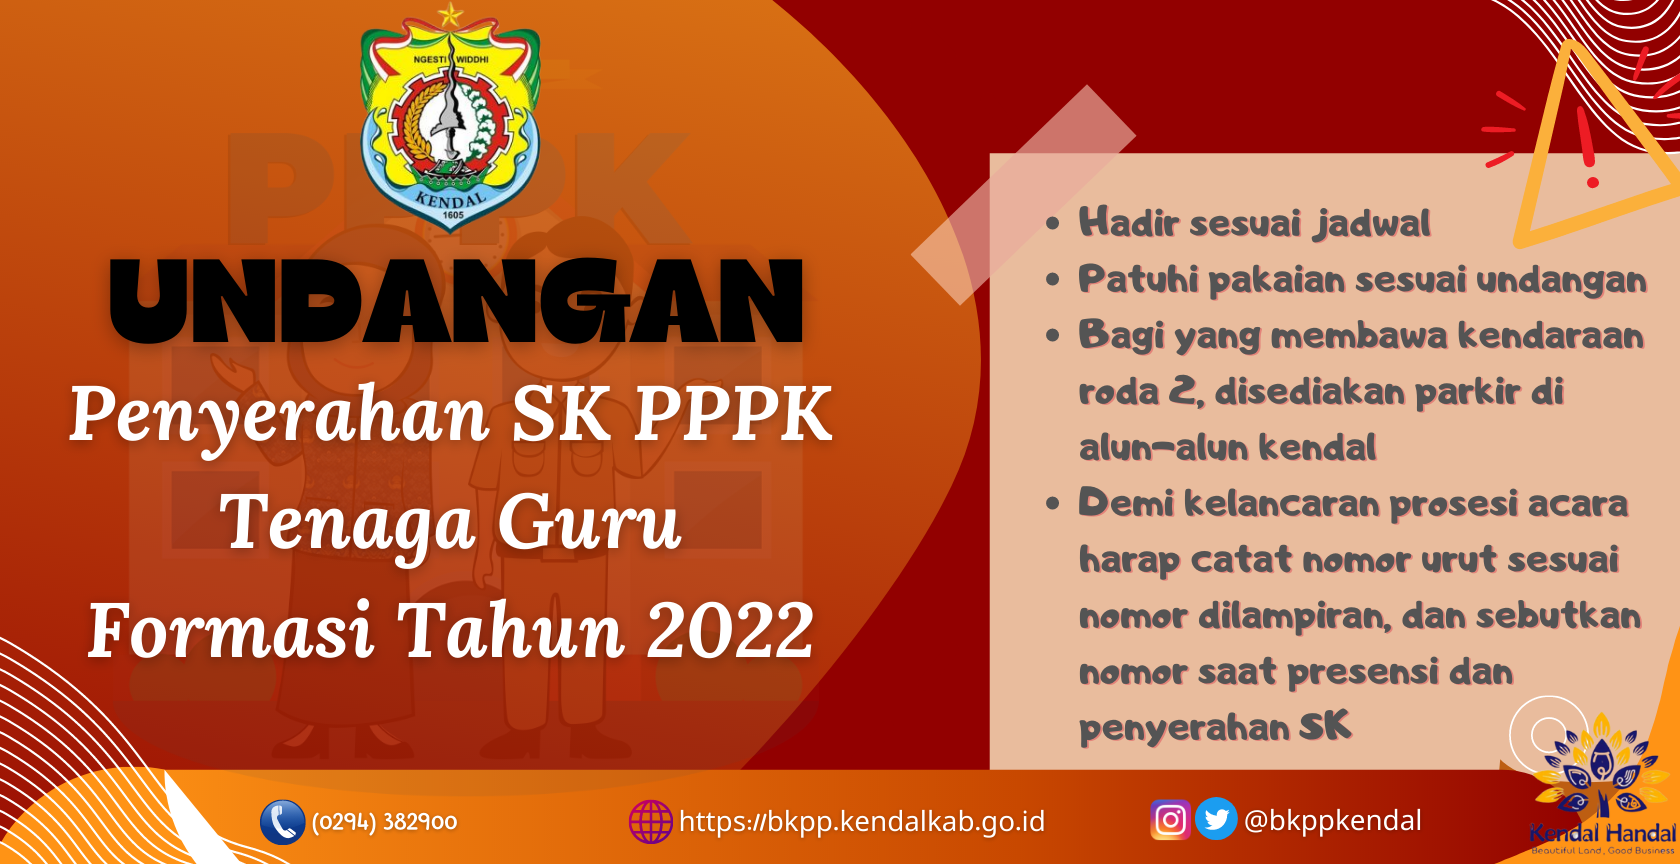 Undangan Penyerahan SK PPPK Tenaga Guru Formasi Tahun 2022